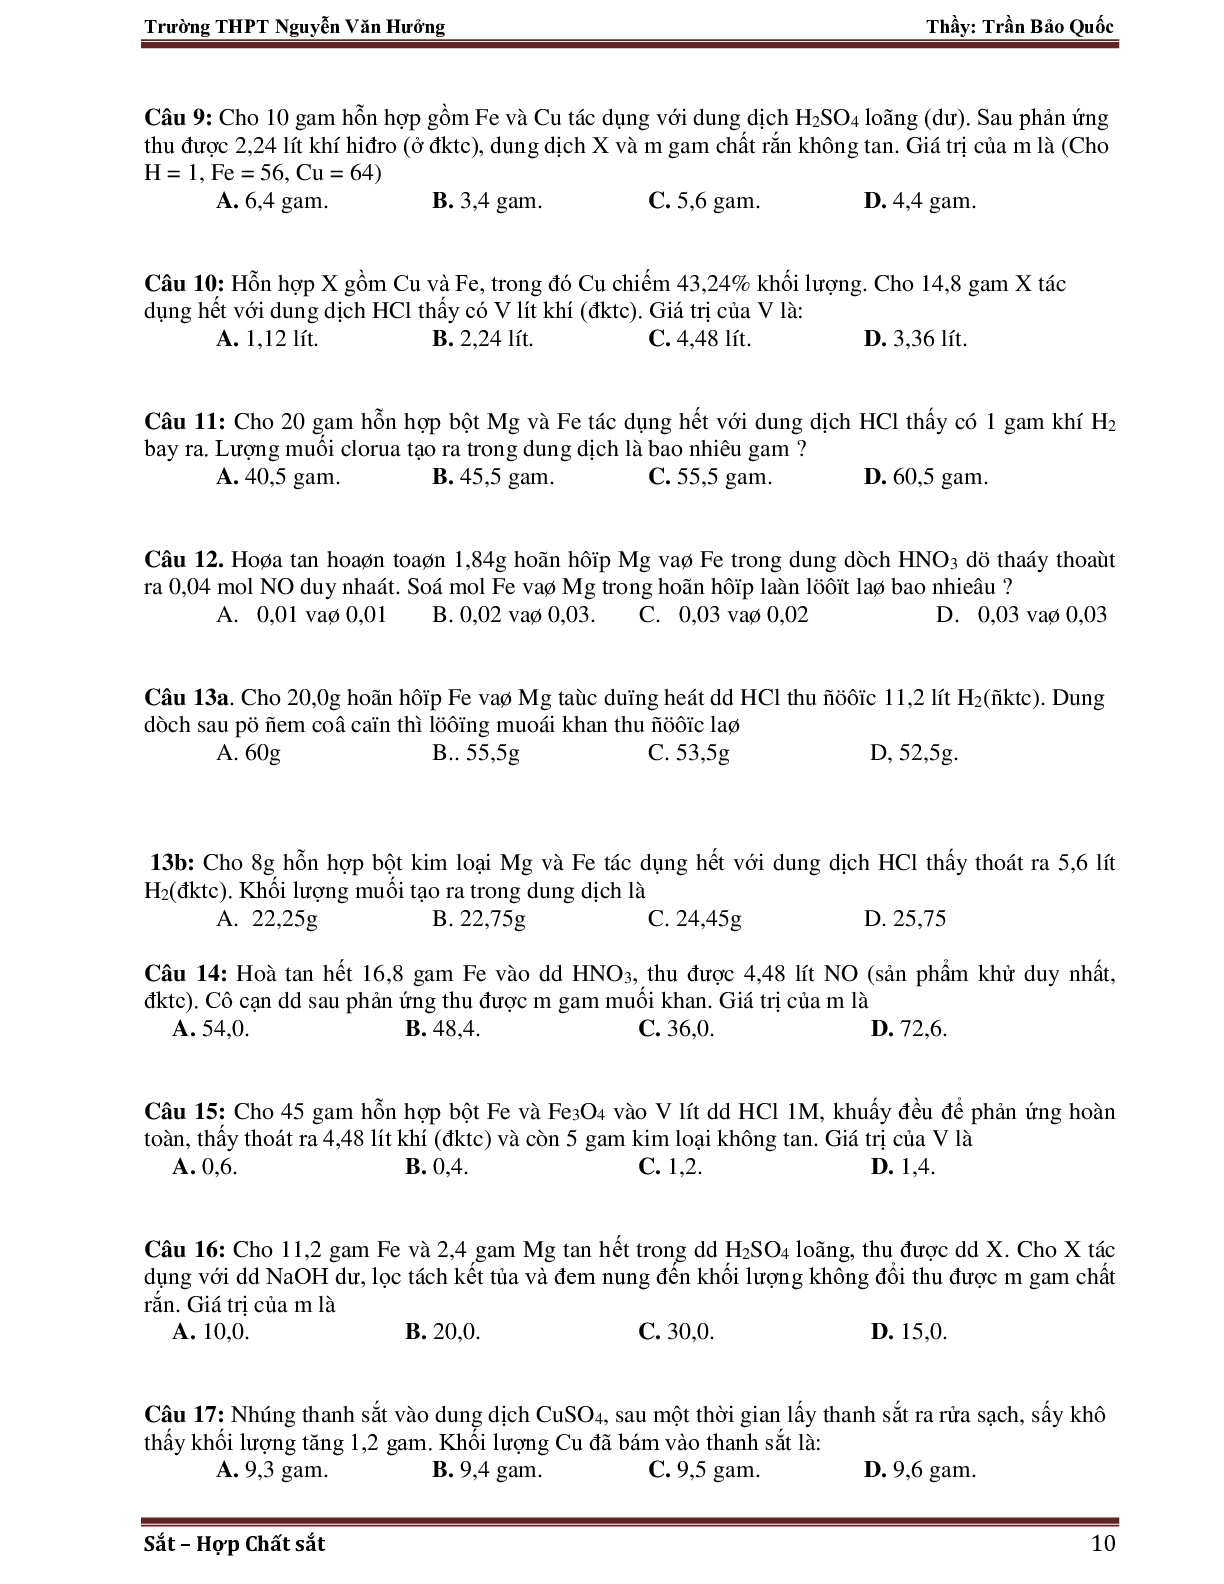 Giáo án Hóa học 12 bài 37: Luyện tập về Sắt mới nhất (trang 10)